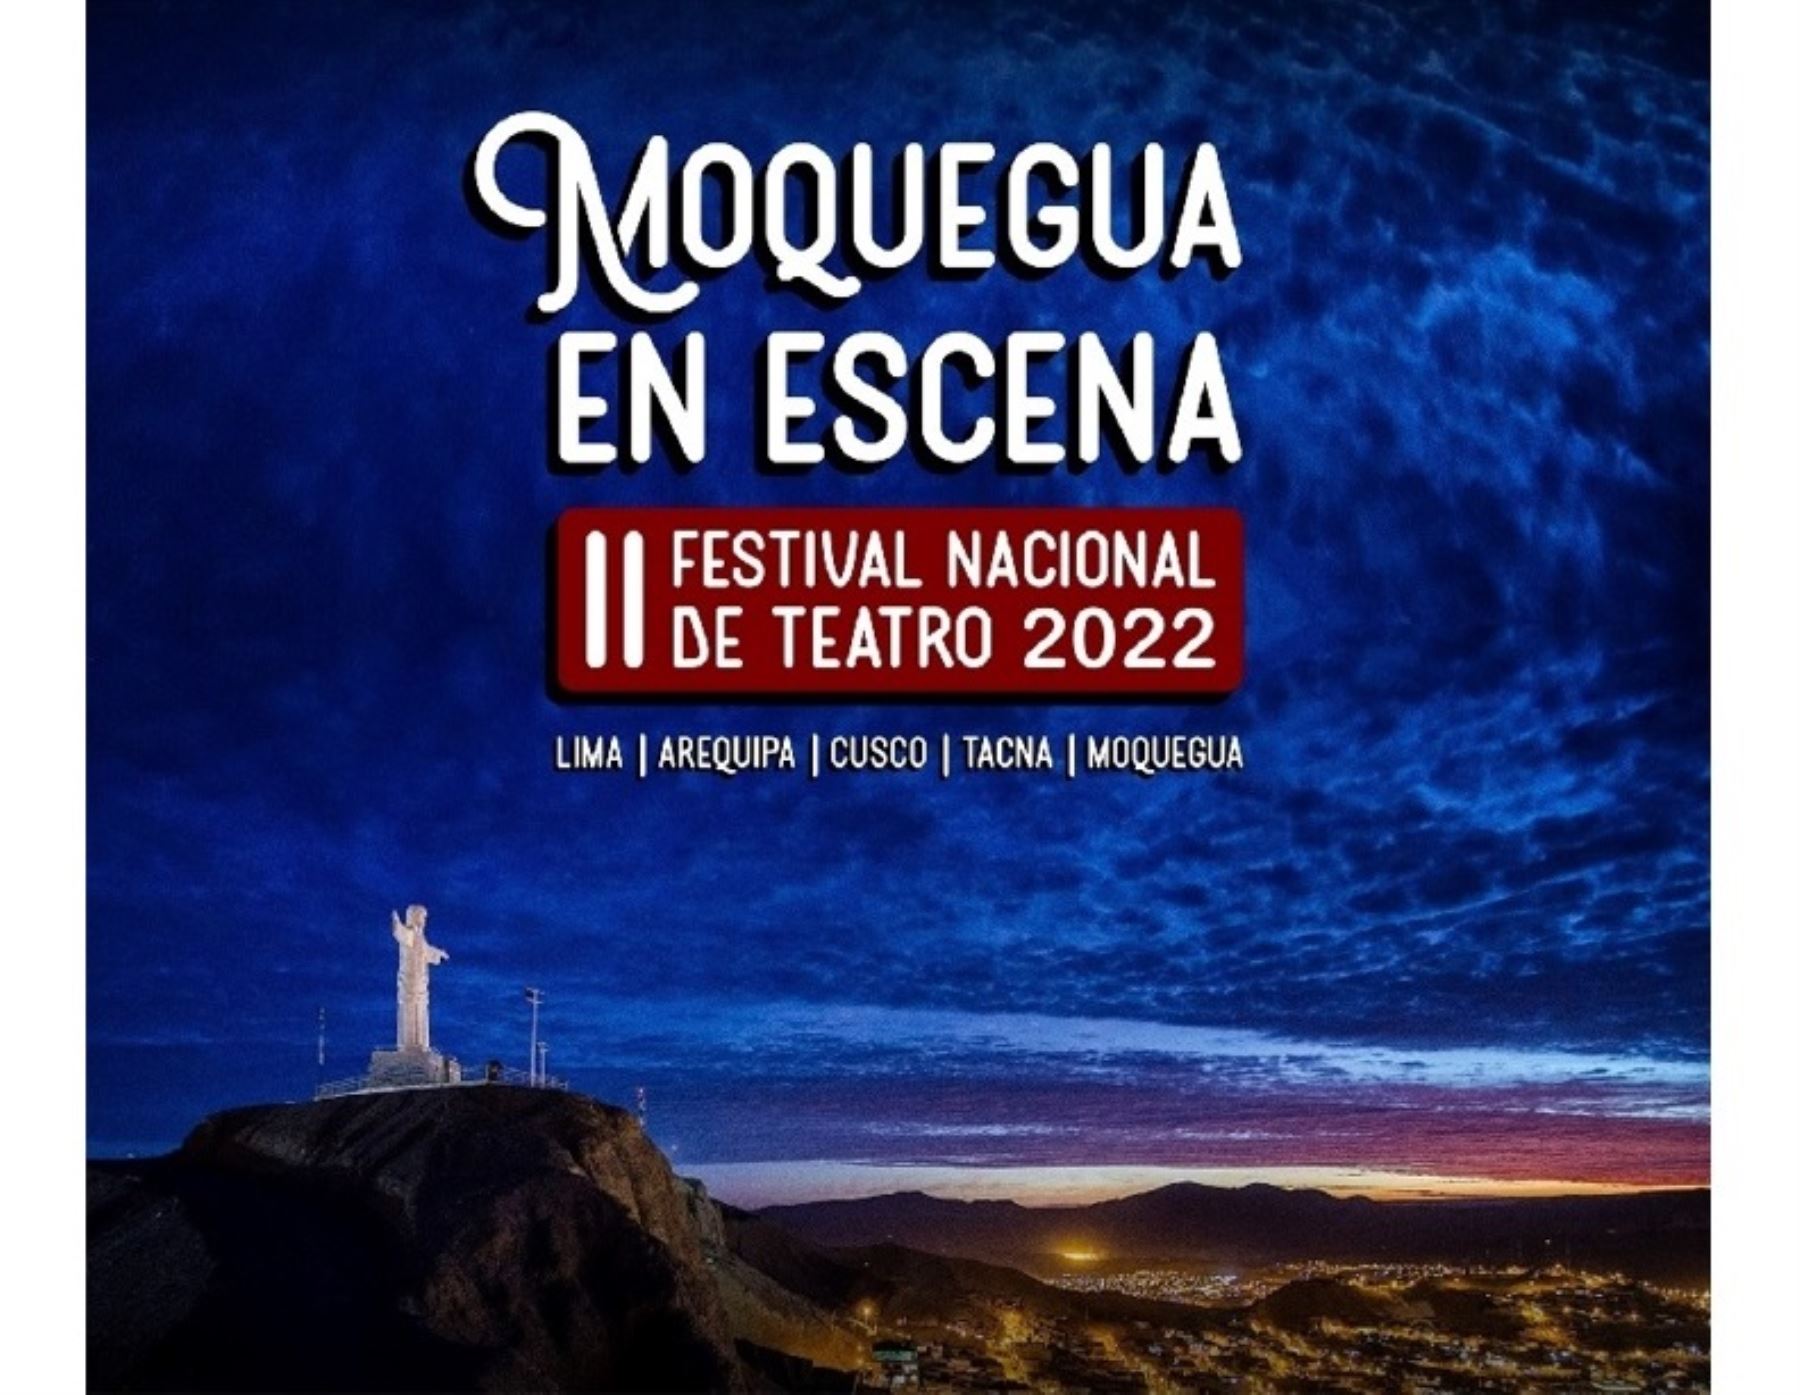 Este jueves 19 de mayo se inicia en Moquegua el Festival Nacional de Teatro 2022